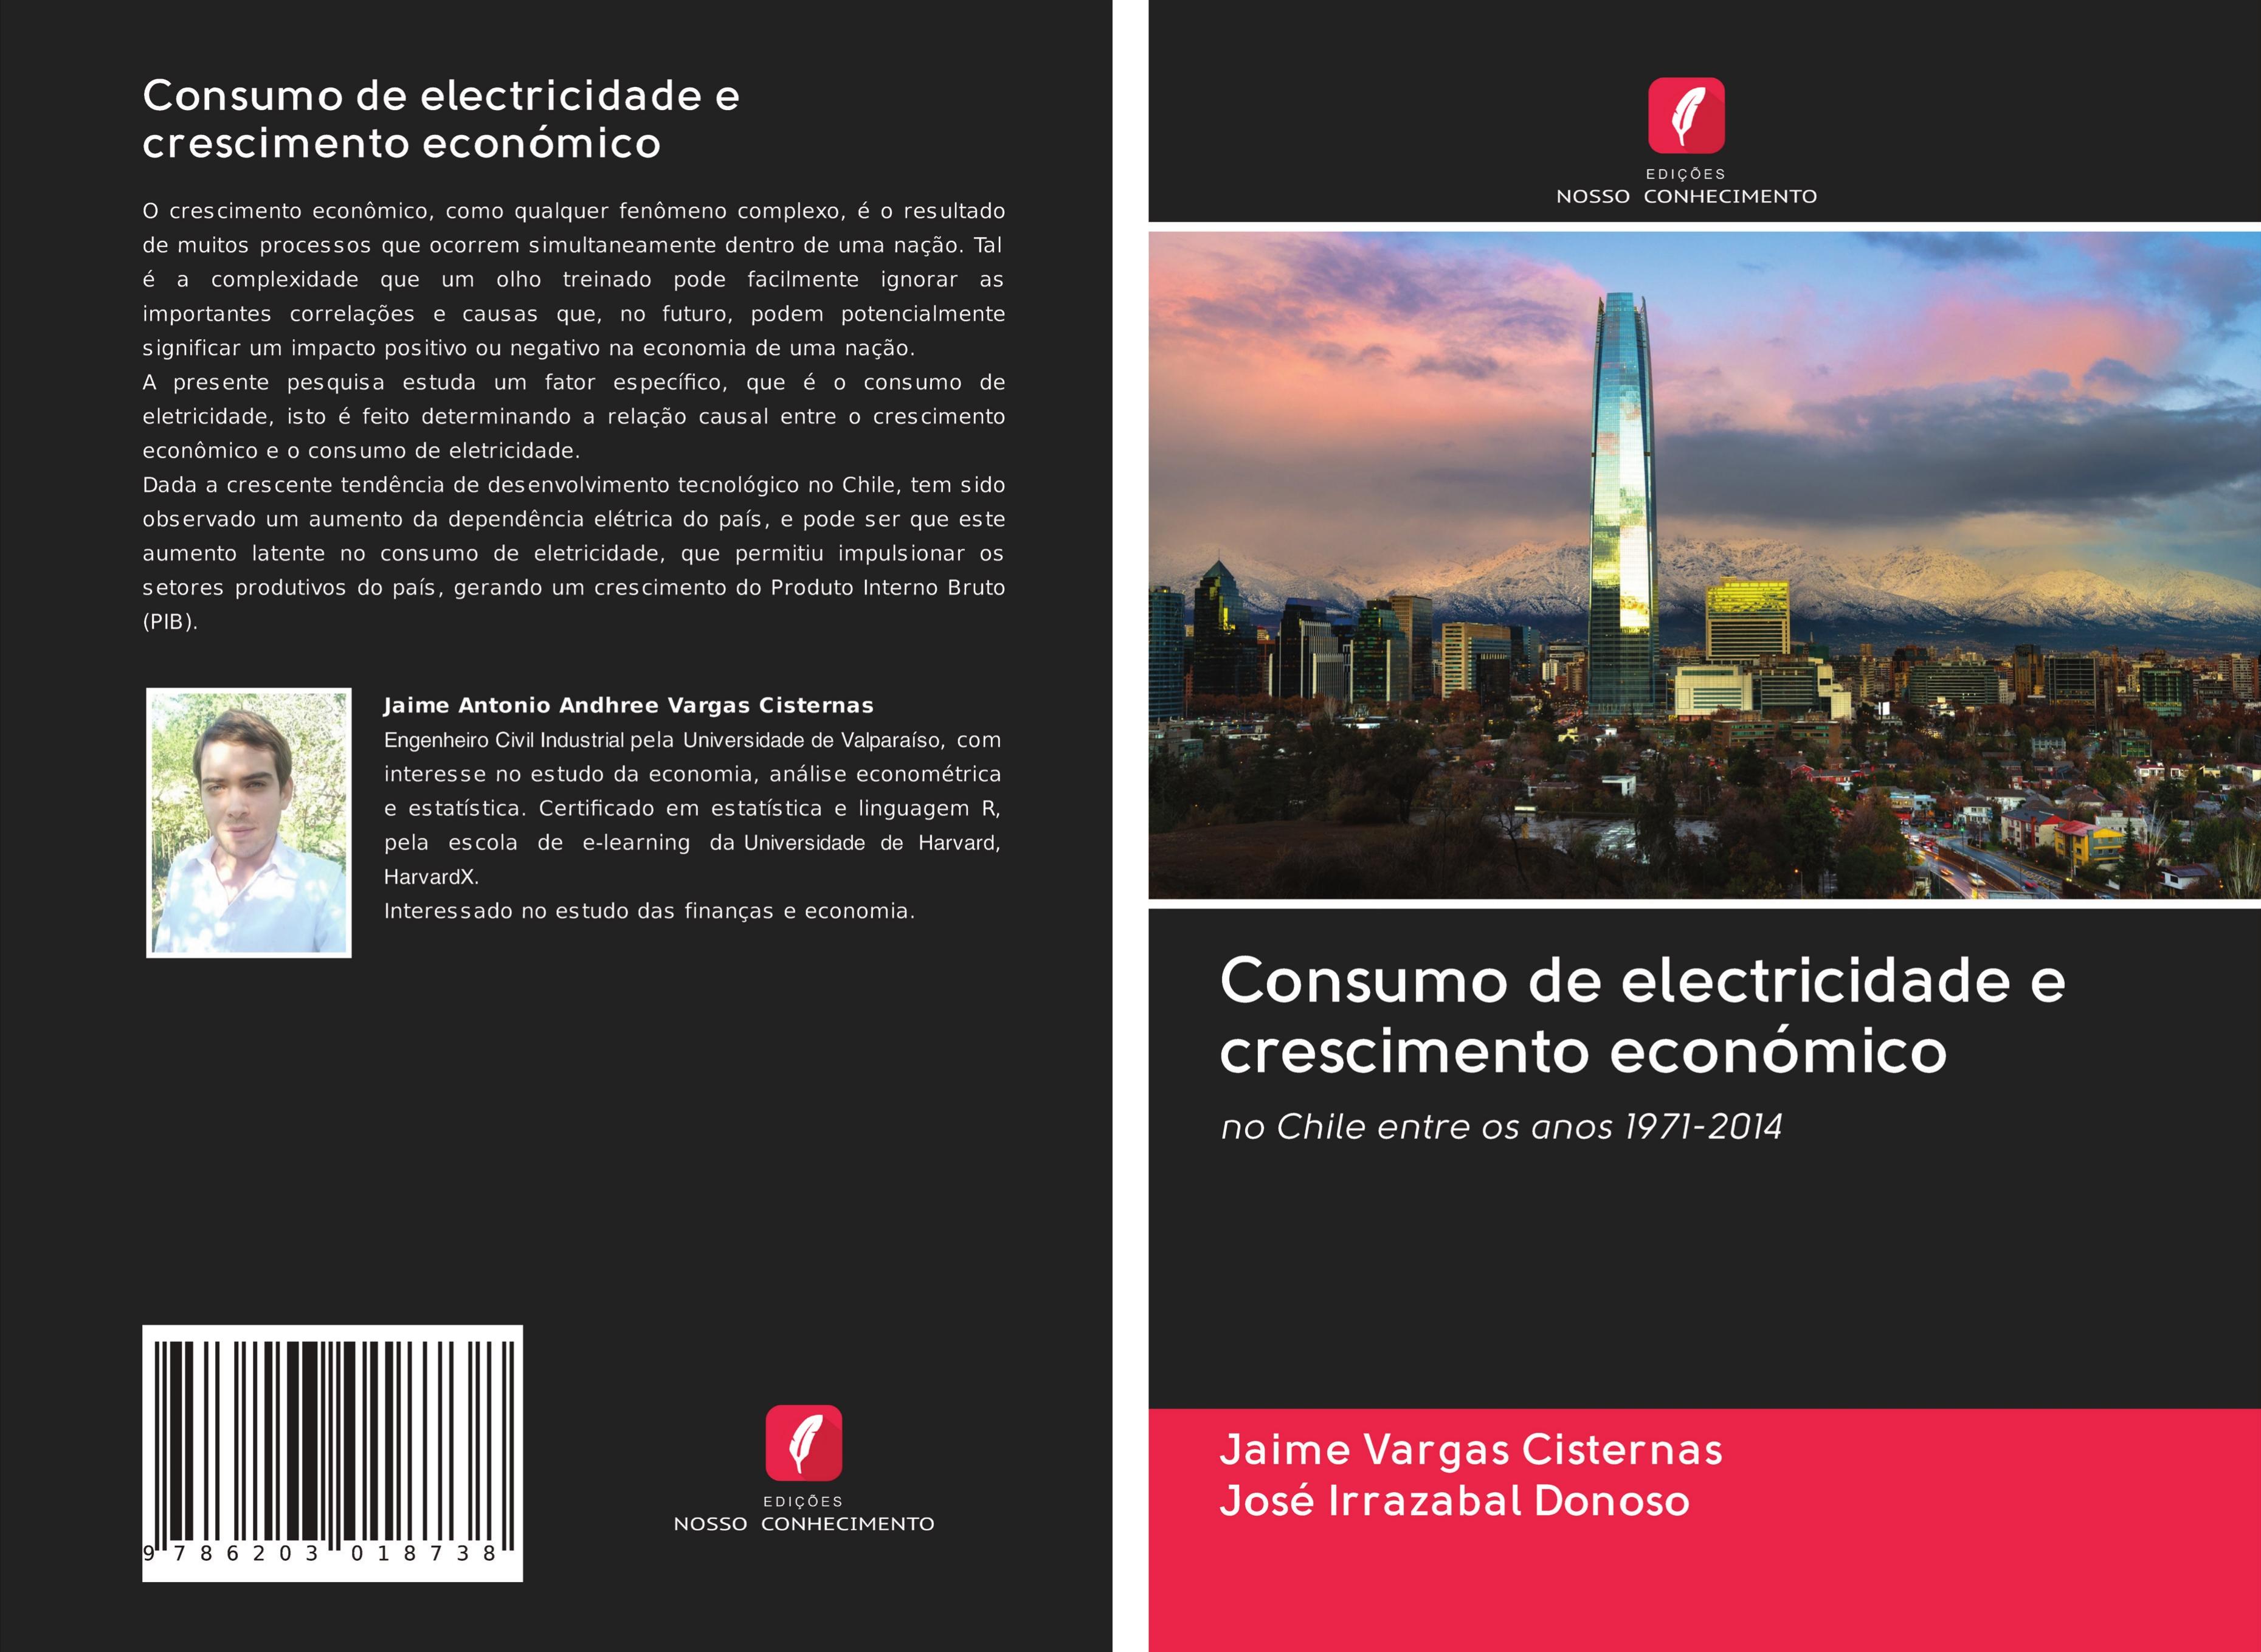 Consumo de electricidade e crescimento económico - Vargas Cisternas, Jaime Irrazabal Donoso, José